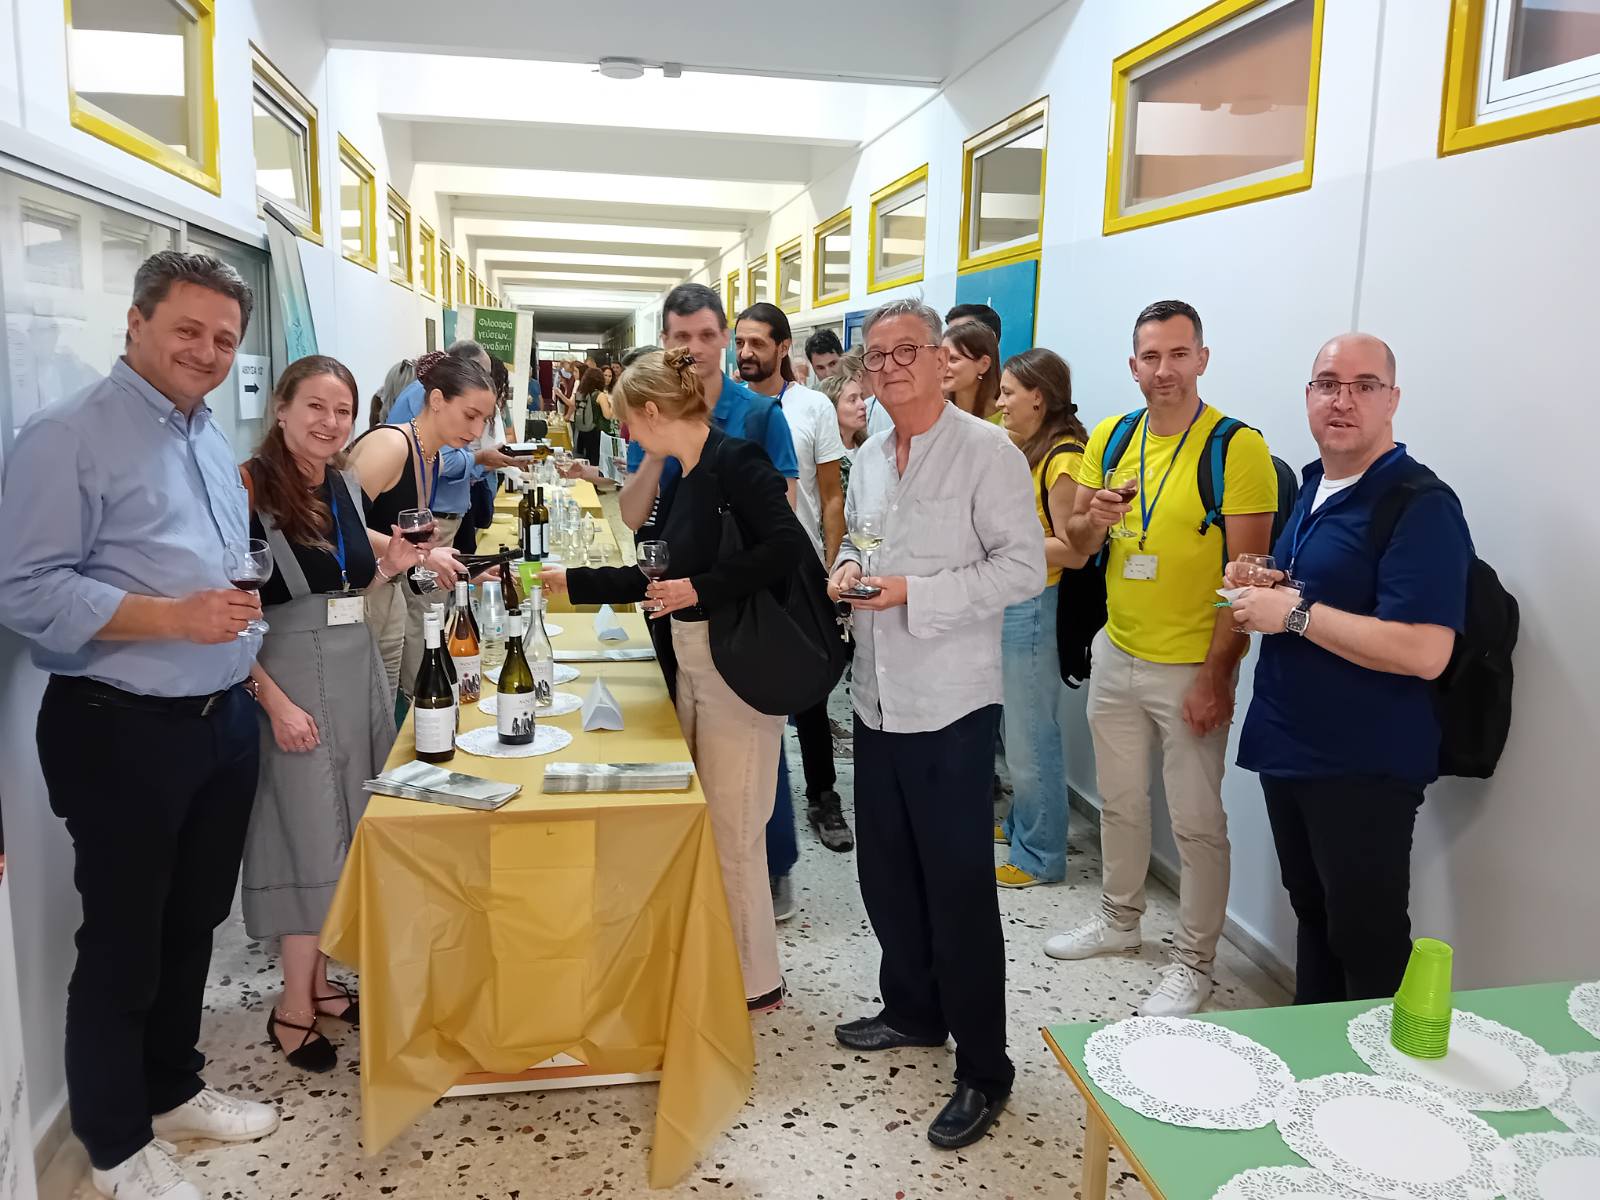 Προϊόντα της Θεσσαλικής γης γεύτηκαν οι σύνεδροι του Διεθνούς Συνεδρίου Μελισσοκομίας στη Λάρισα